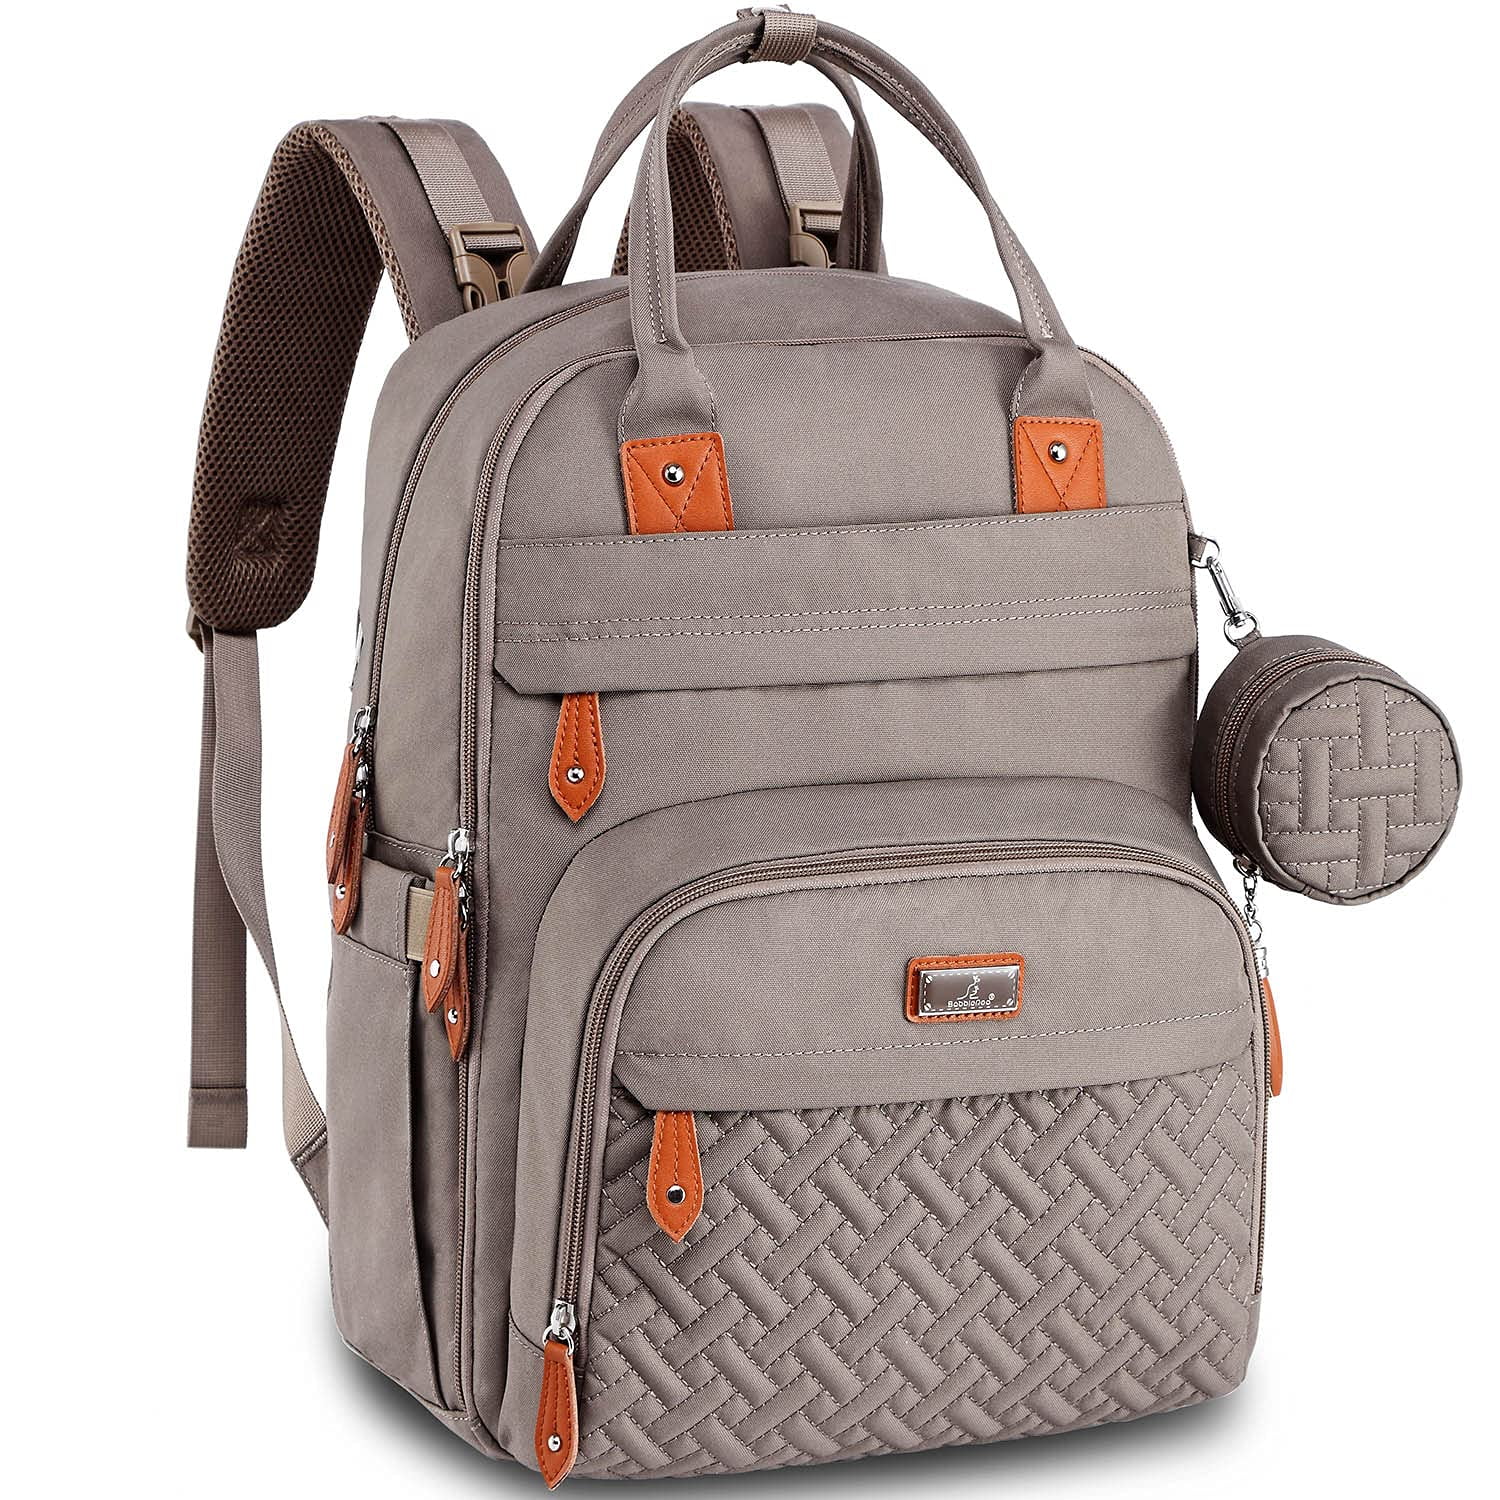 Original Diaper Bag Backpack | Babbleroo Khaki